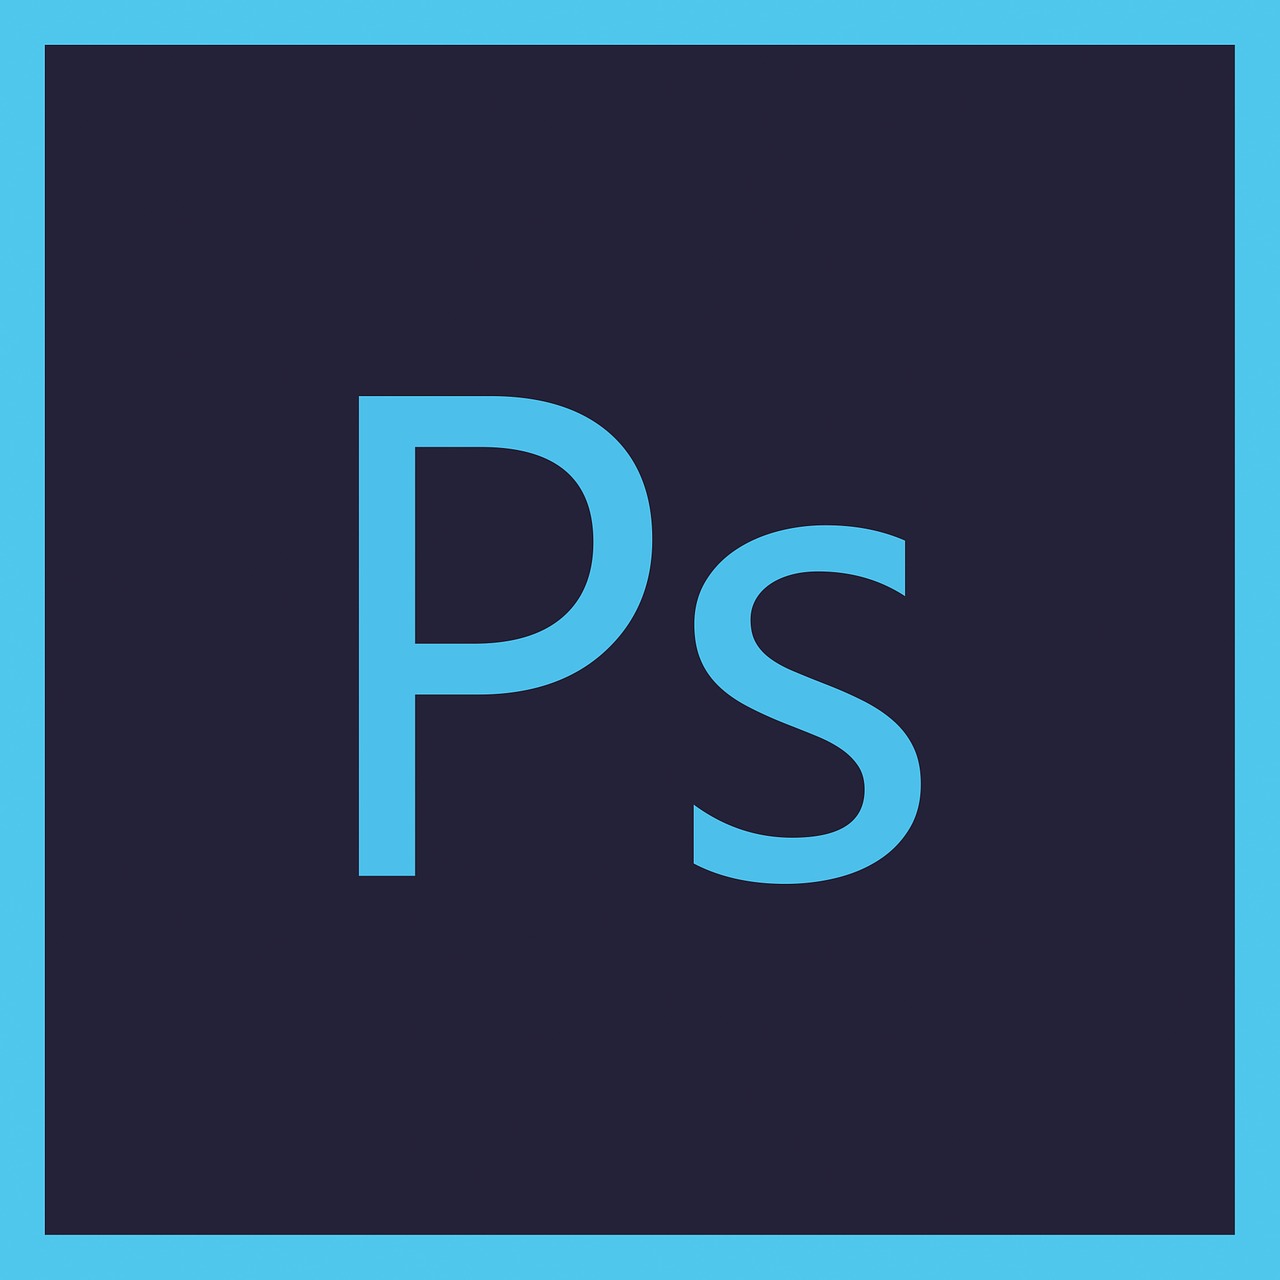 photoshop logo symbol free photo